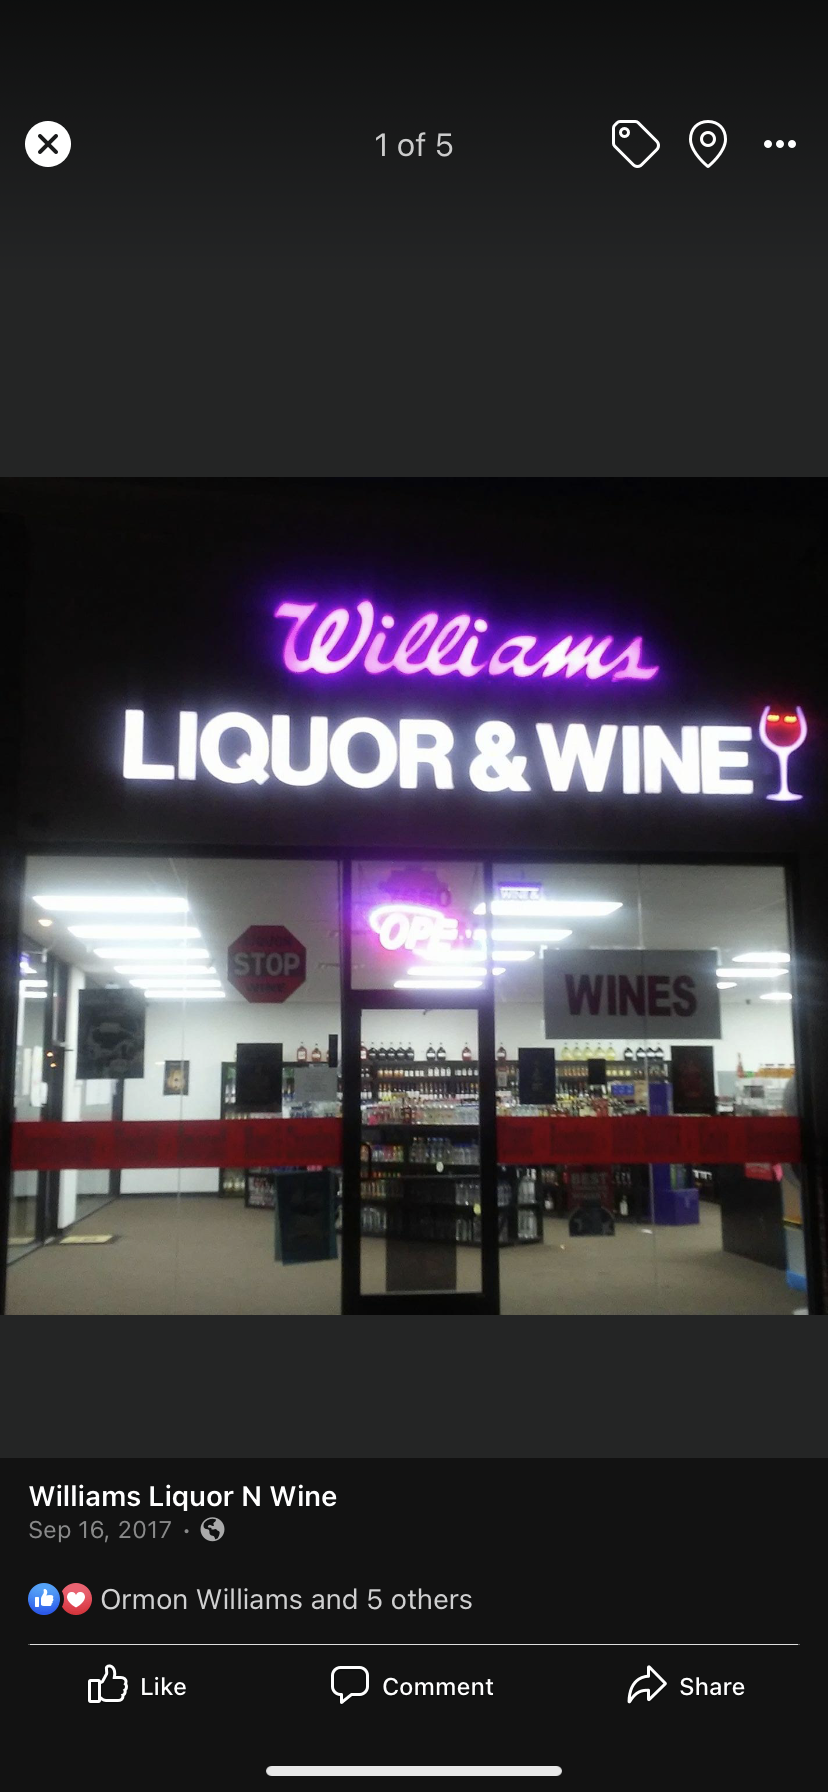 Williams Liquor & Wines